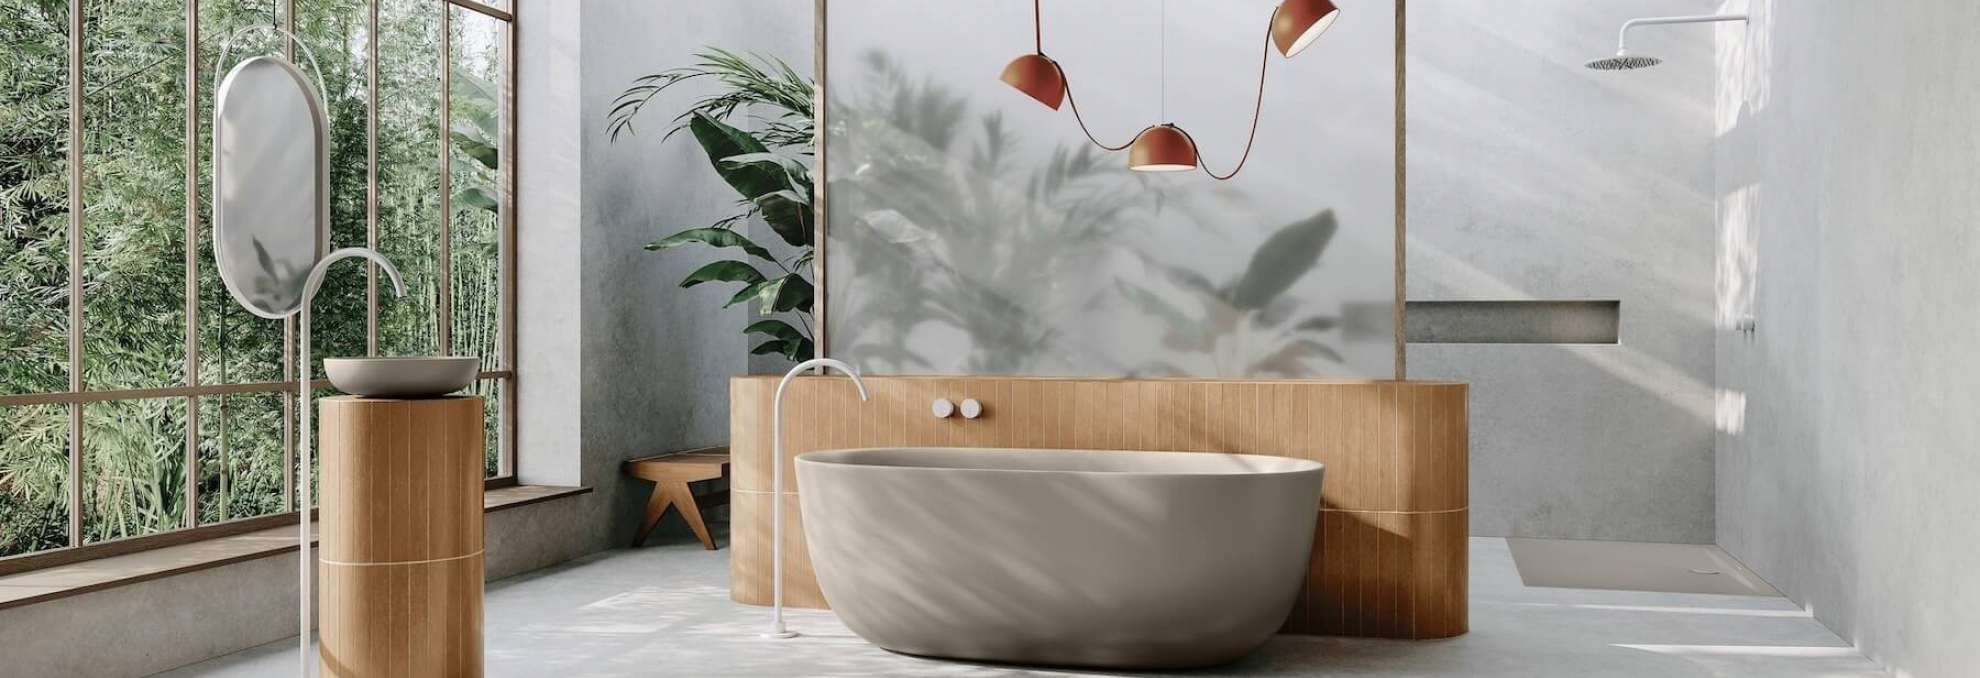 Koupelna v přírodním designu s vybavením od Kaldewei